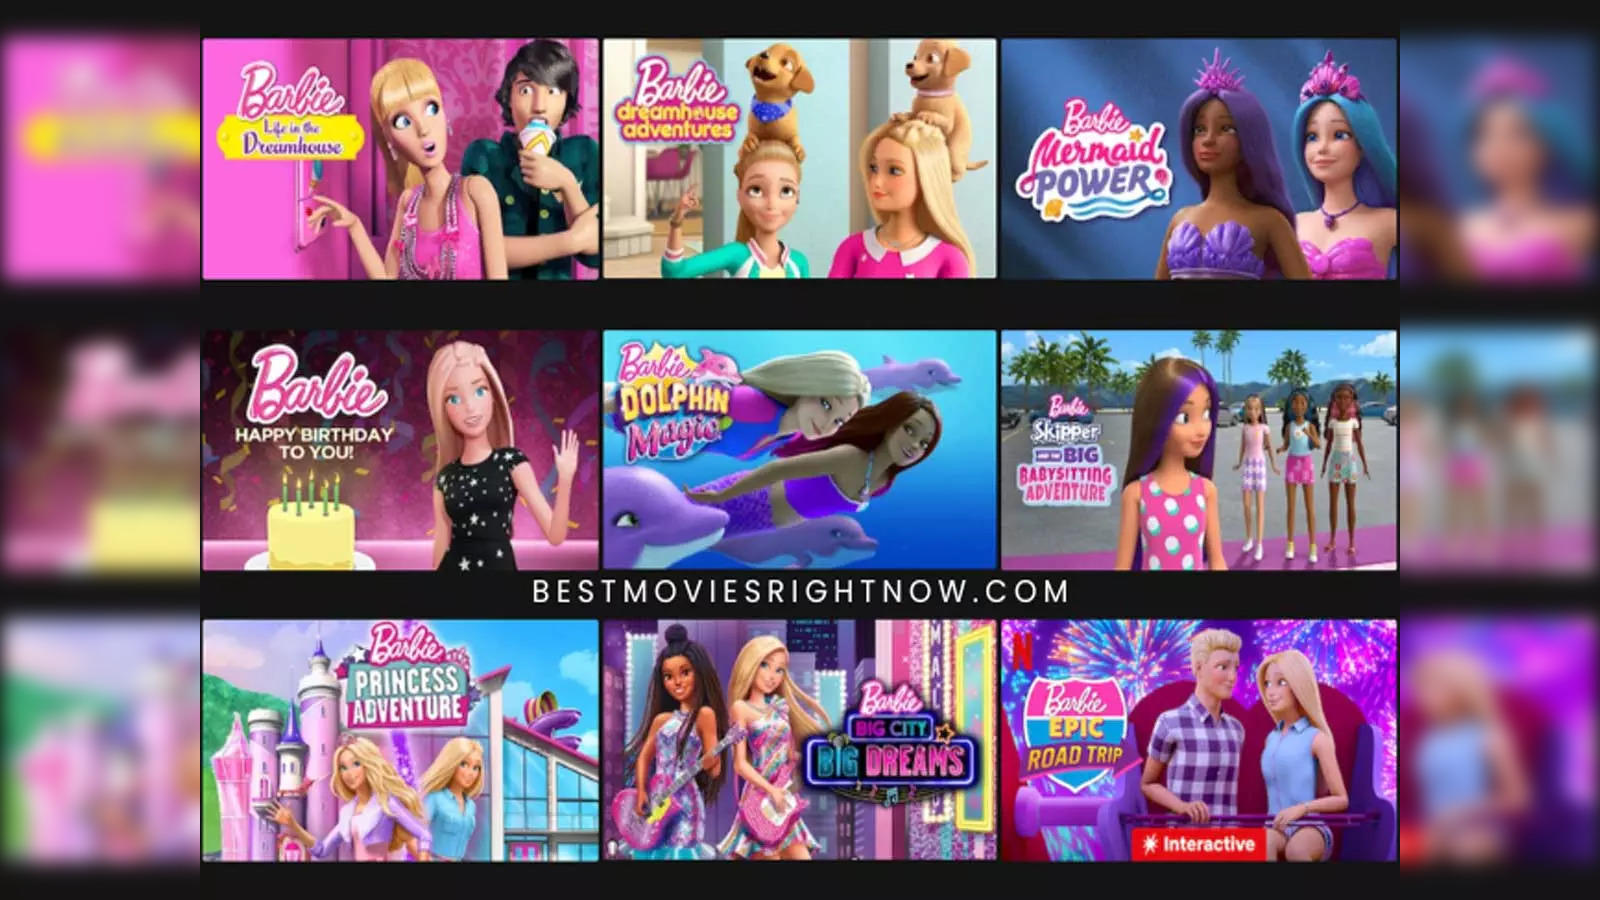 Watch Barbie Mermaid Power